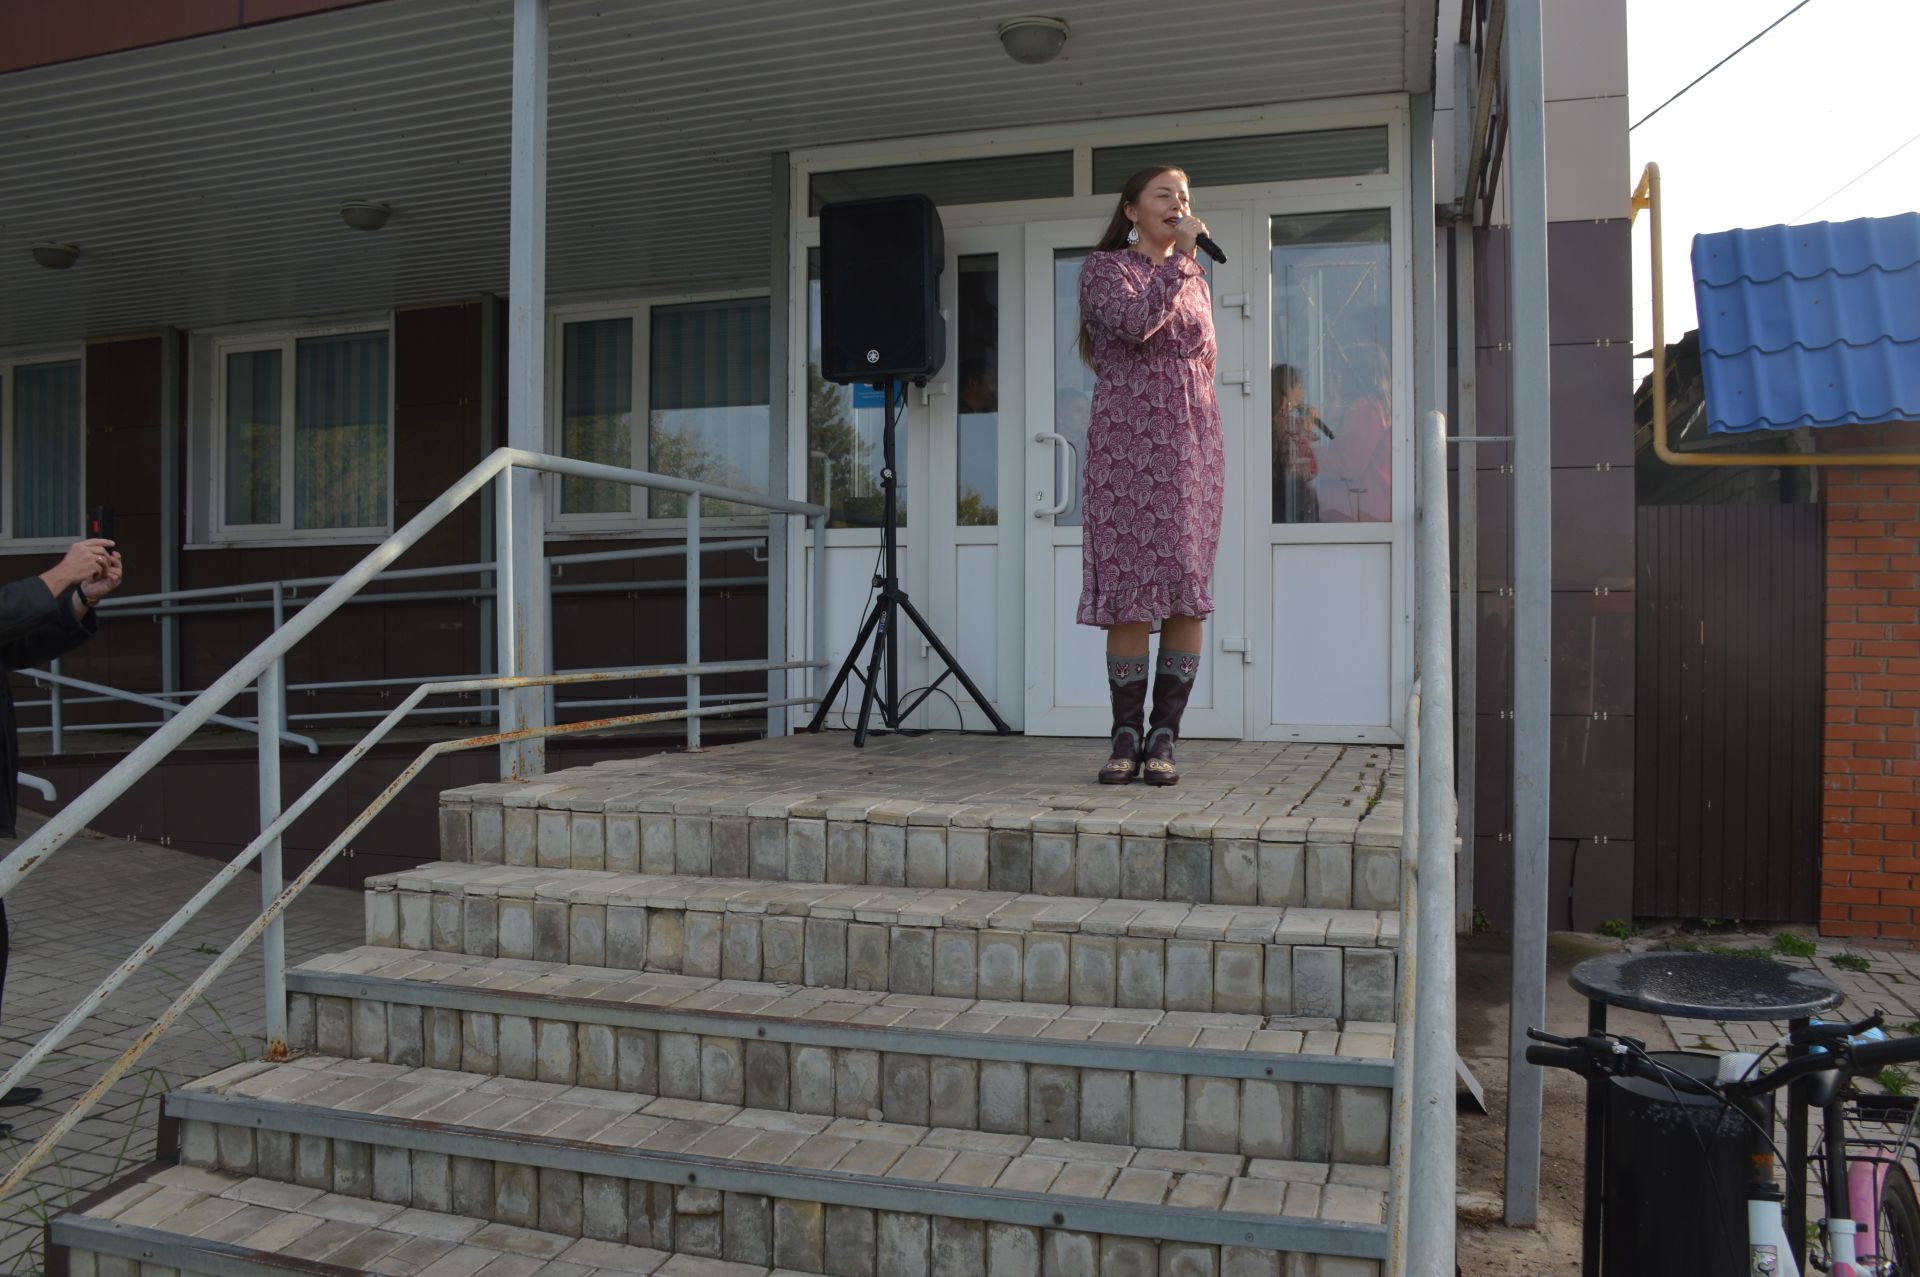 Сегодня в рамках декады пожилых людей в Лаишевском районе прошла осенняя ярмарка